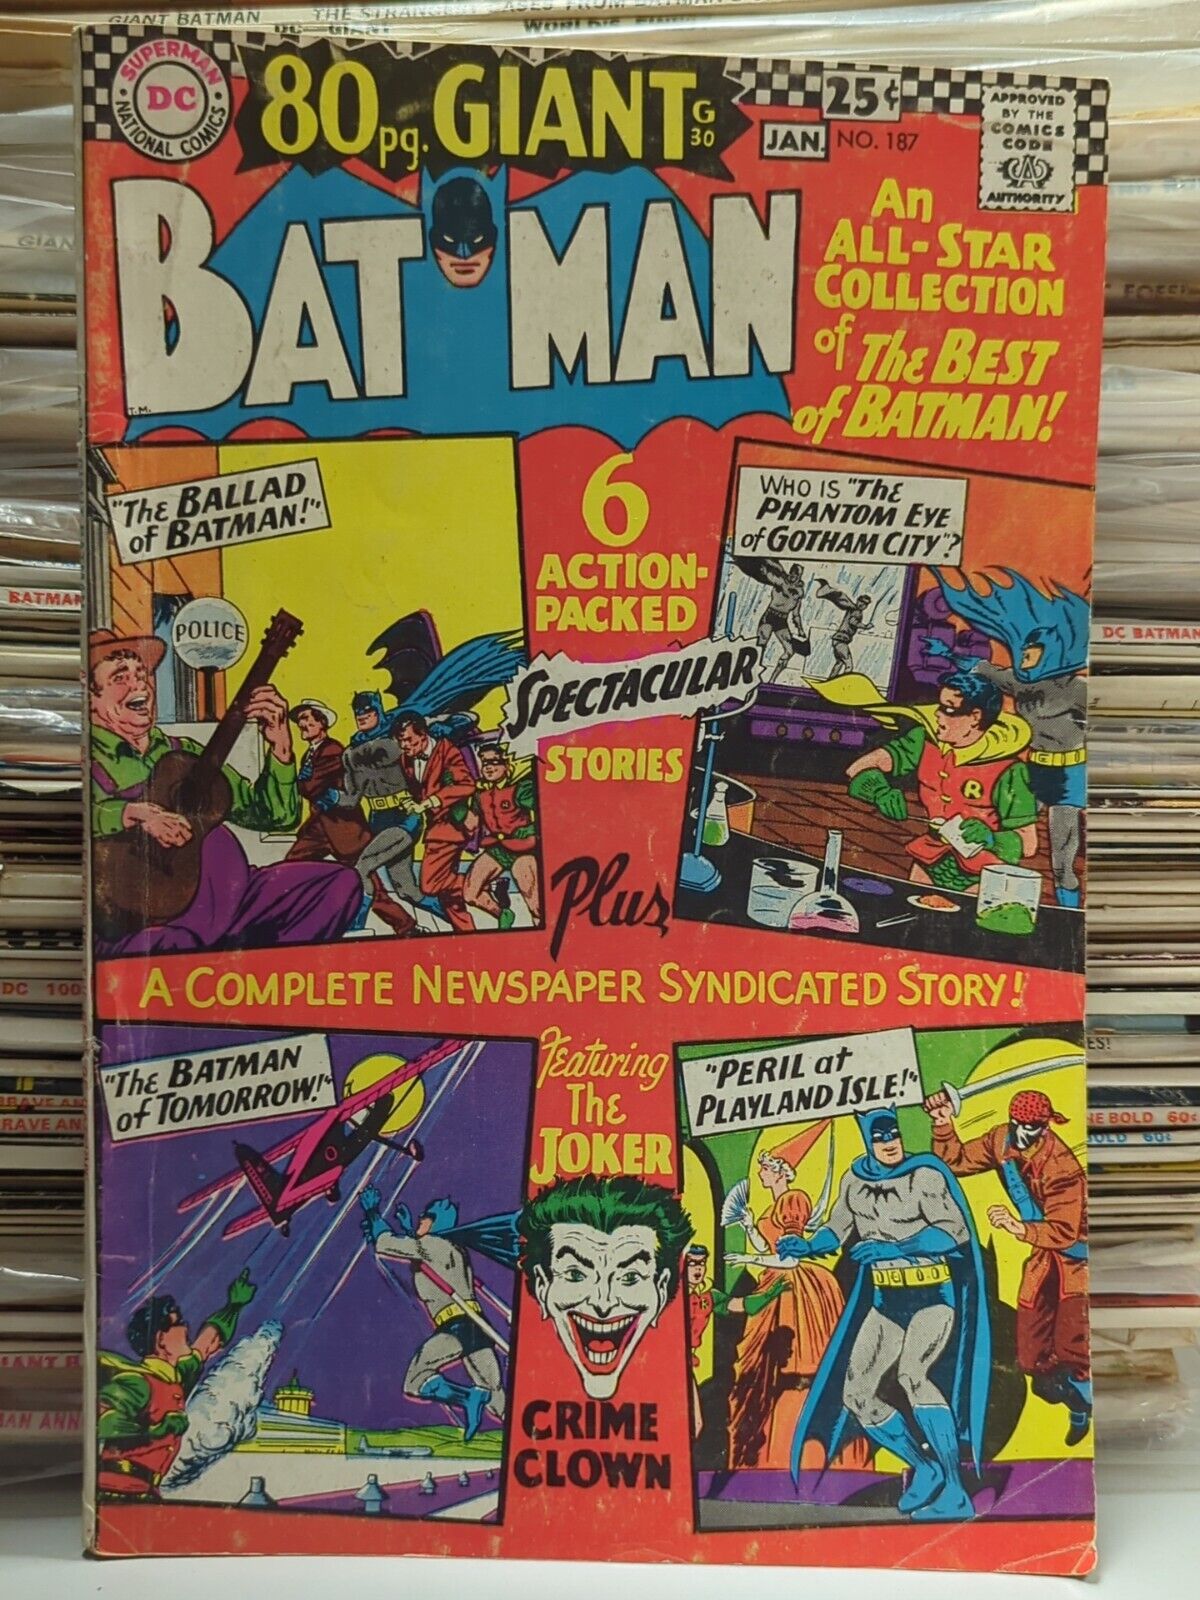 Batman #187 DC Comics (Jan 1967)